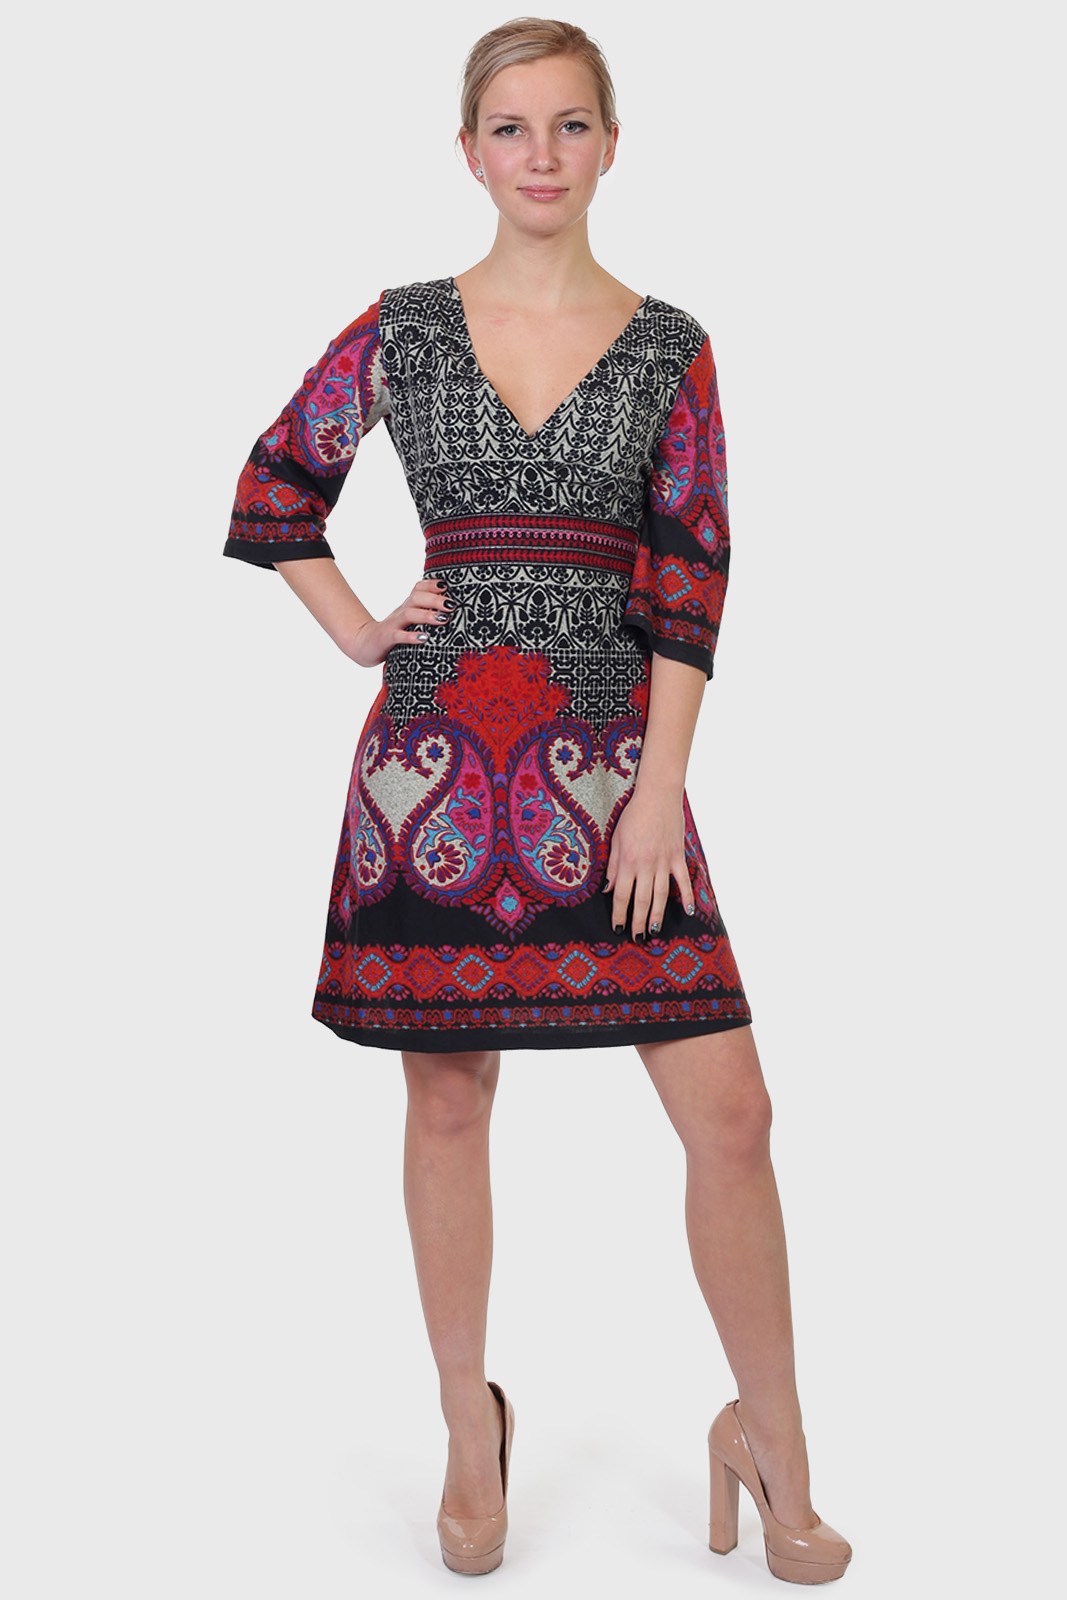 Купить красивое платье на сайте Военпро